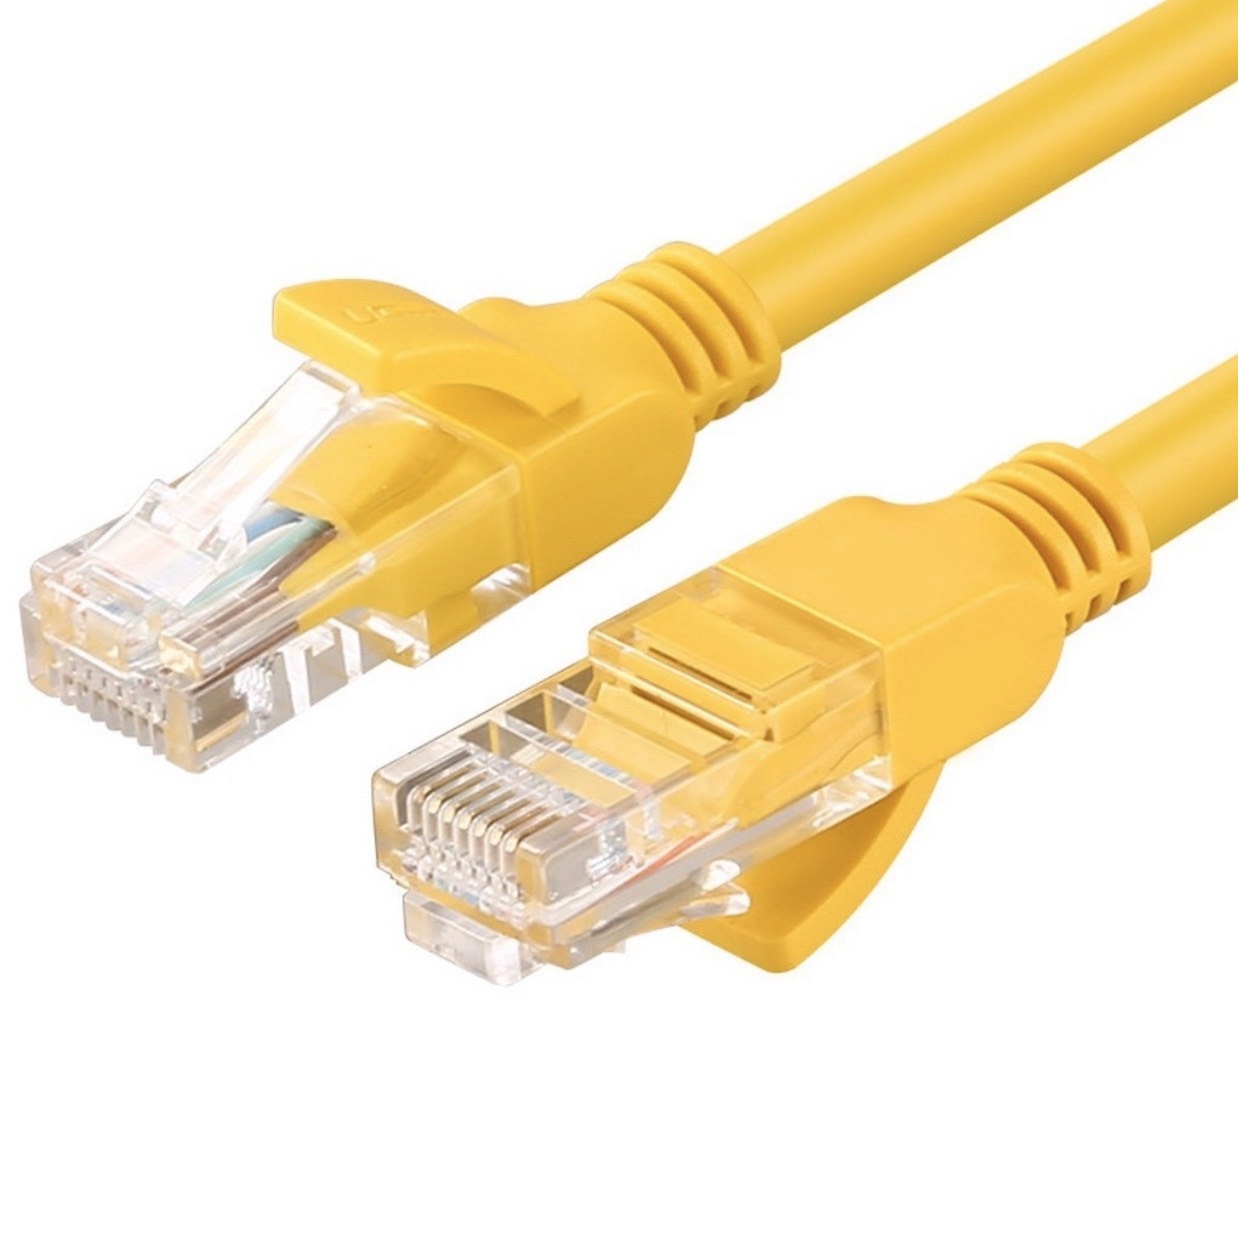 Cáp mạng internet/mạng LAN Cat 6E 10m 2 đầu bấm sẵn